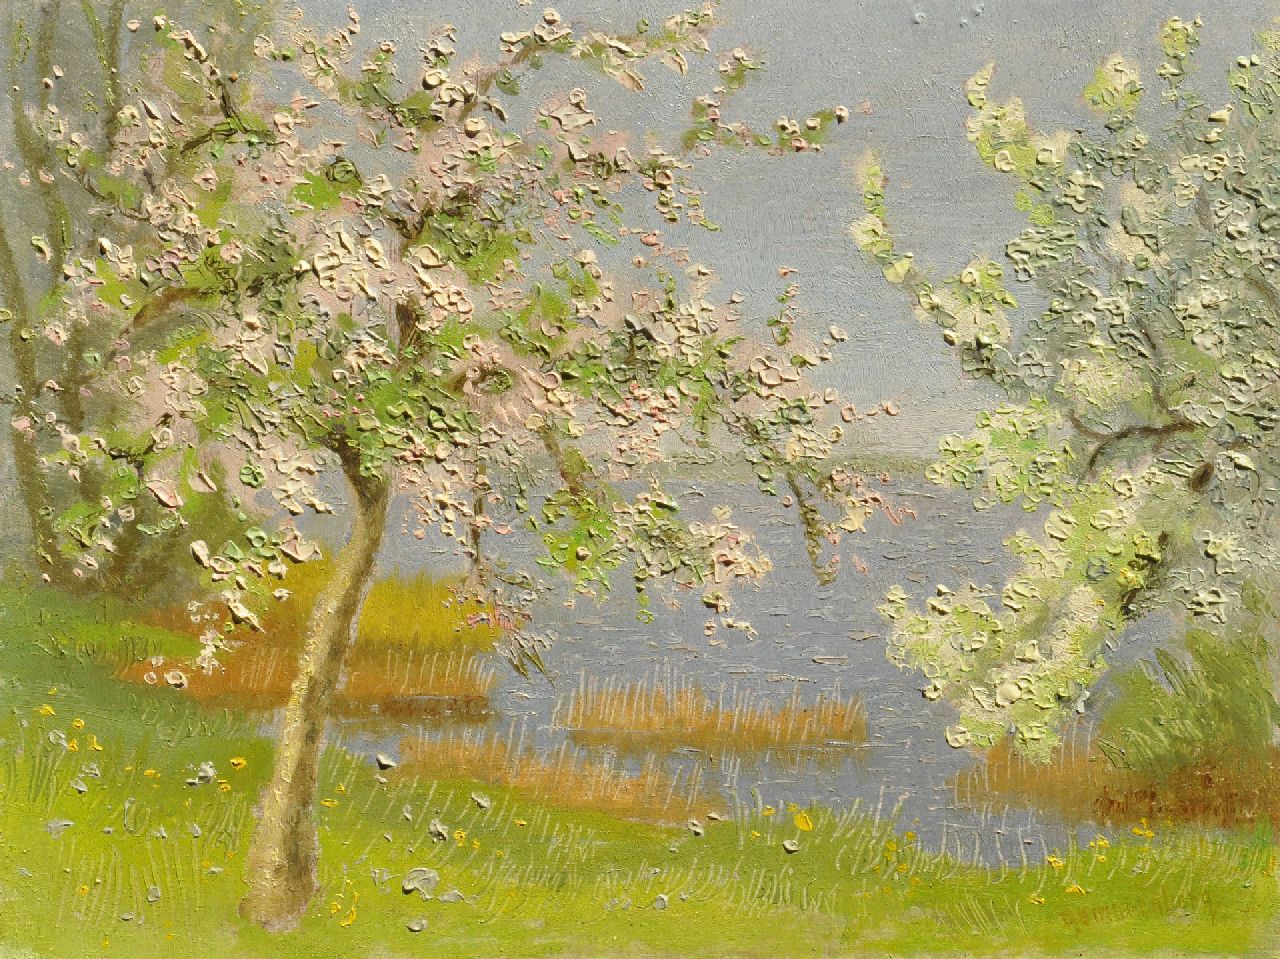 Smorenberg D.  | Dirk Smorenberg, Flowering trees in the painter's garden on the Loenderveense Plas, oil on board 18.0 x 23.9 cm, signed l.r.